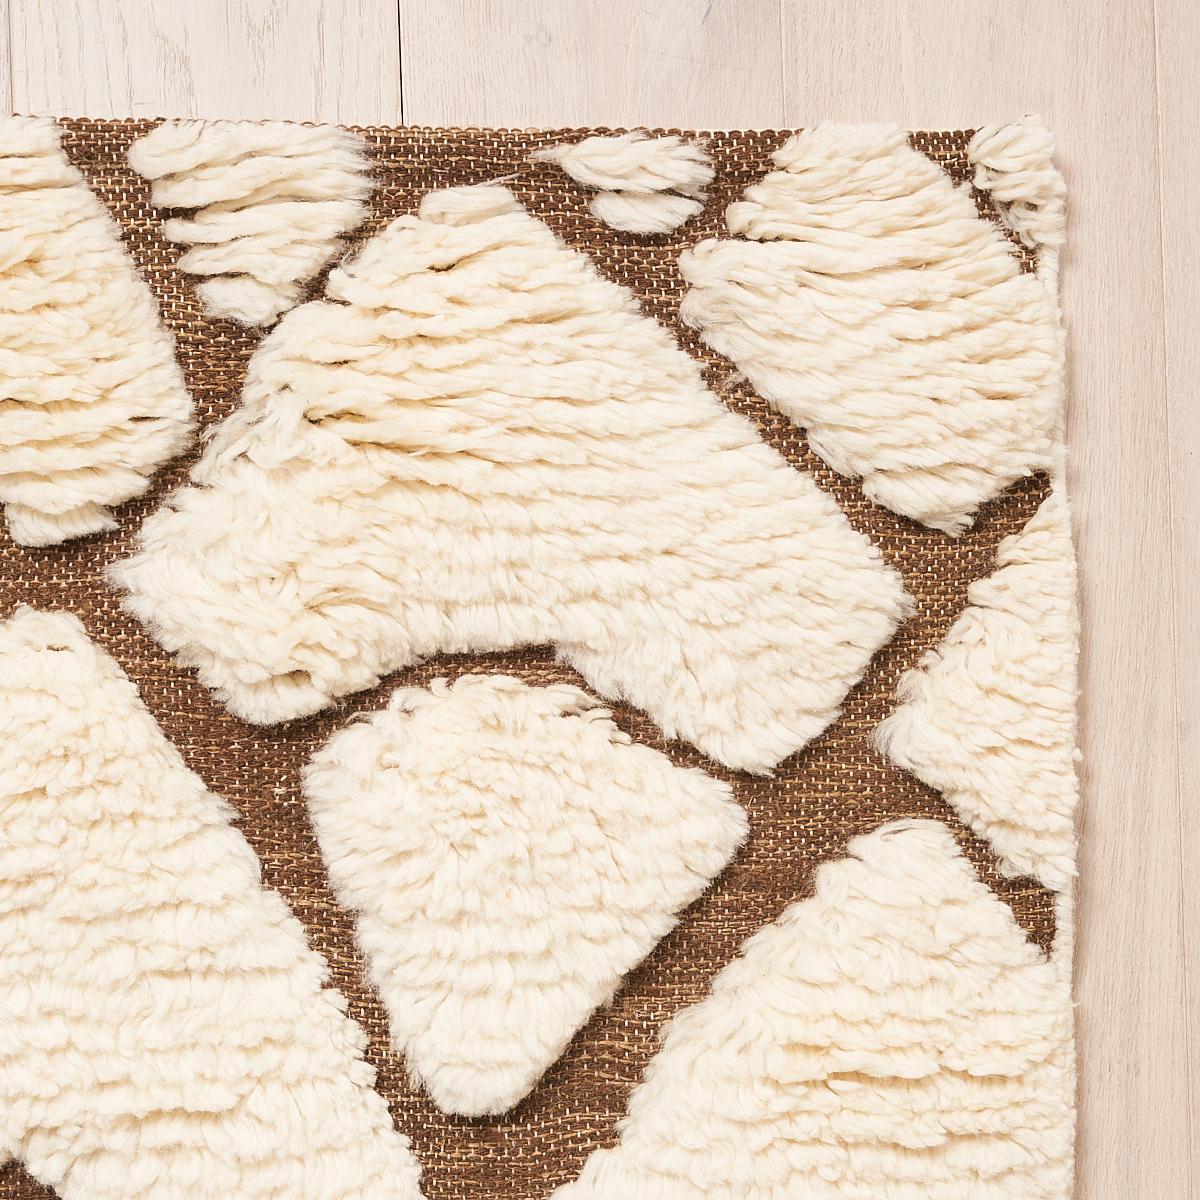 Ce tapis sera expédié en décembre. Un design somptueux fait de fils noués à la main, Zimba est un motif abstrait à grande échelle avec une texture prononcée et séduisante. Inspiré par l'un de nos motifs de tissus et de papiers peints les plus